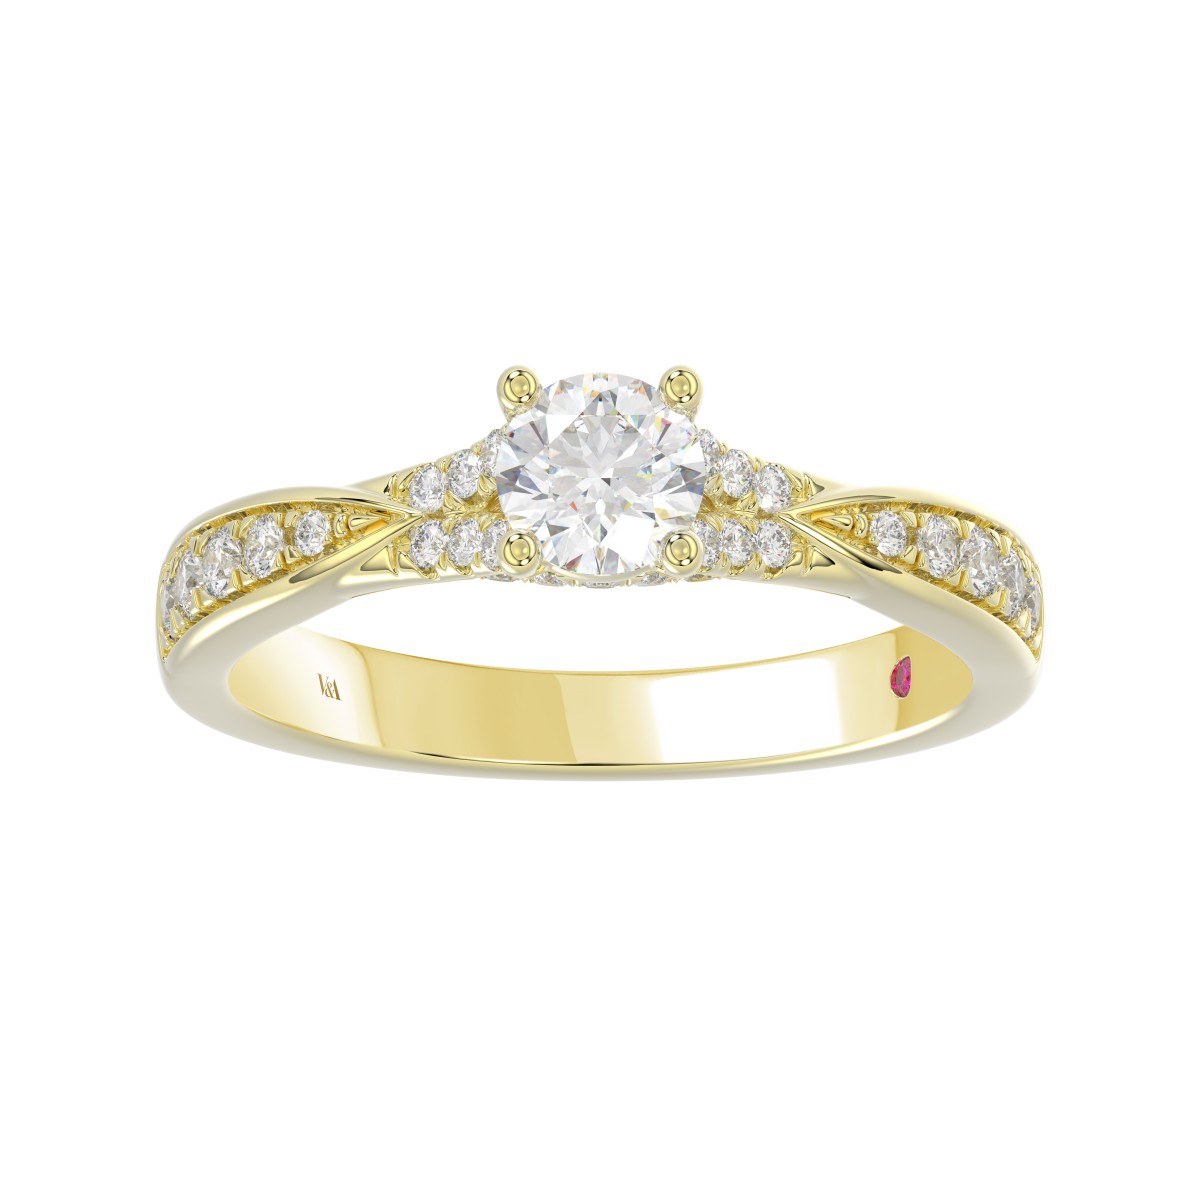 14K YELLOW GOLD 3/4CT ROUND DIAMOND LADIES RING( CENTER STONE ROUND DIAMOND 3/8CT)